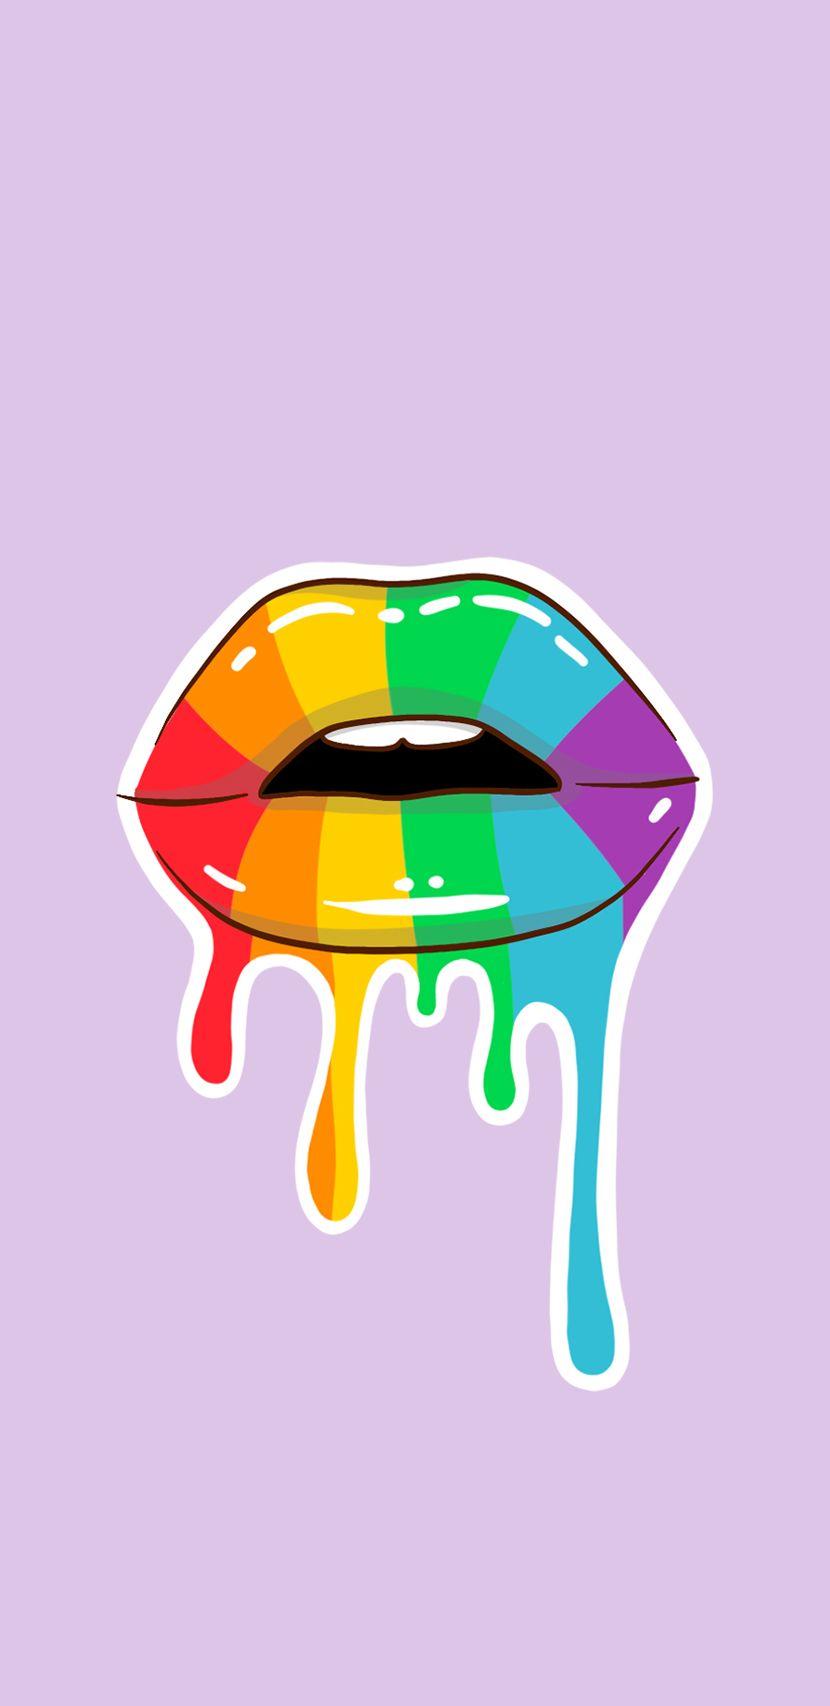 Nếu bạn đang tìm kiếm những hình nền LGBTQ đầy sáng tạo và độc đáo, bạn đã đến đúng nơi! Từ những gam màu tươi sáng tới những biểu tượng mang tính cộng đồng, chúng tôi cam kết mang đến những hình ảnh độc đáo nhất cho bạn!